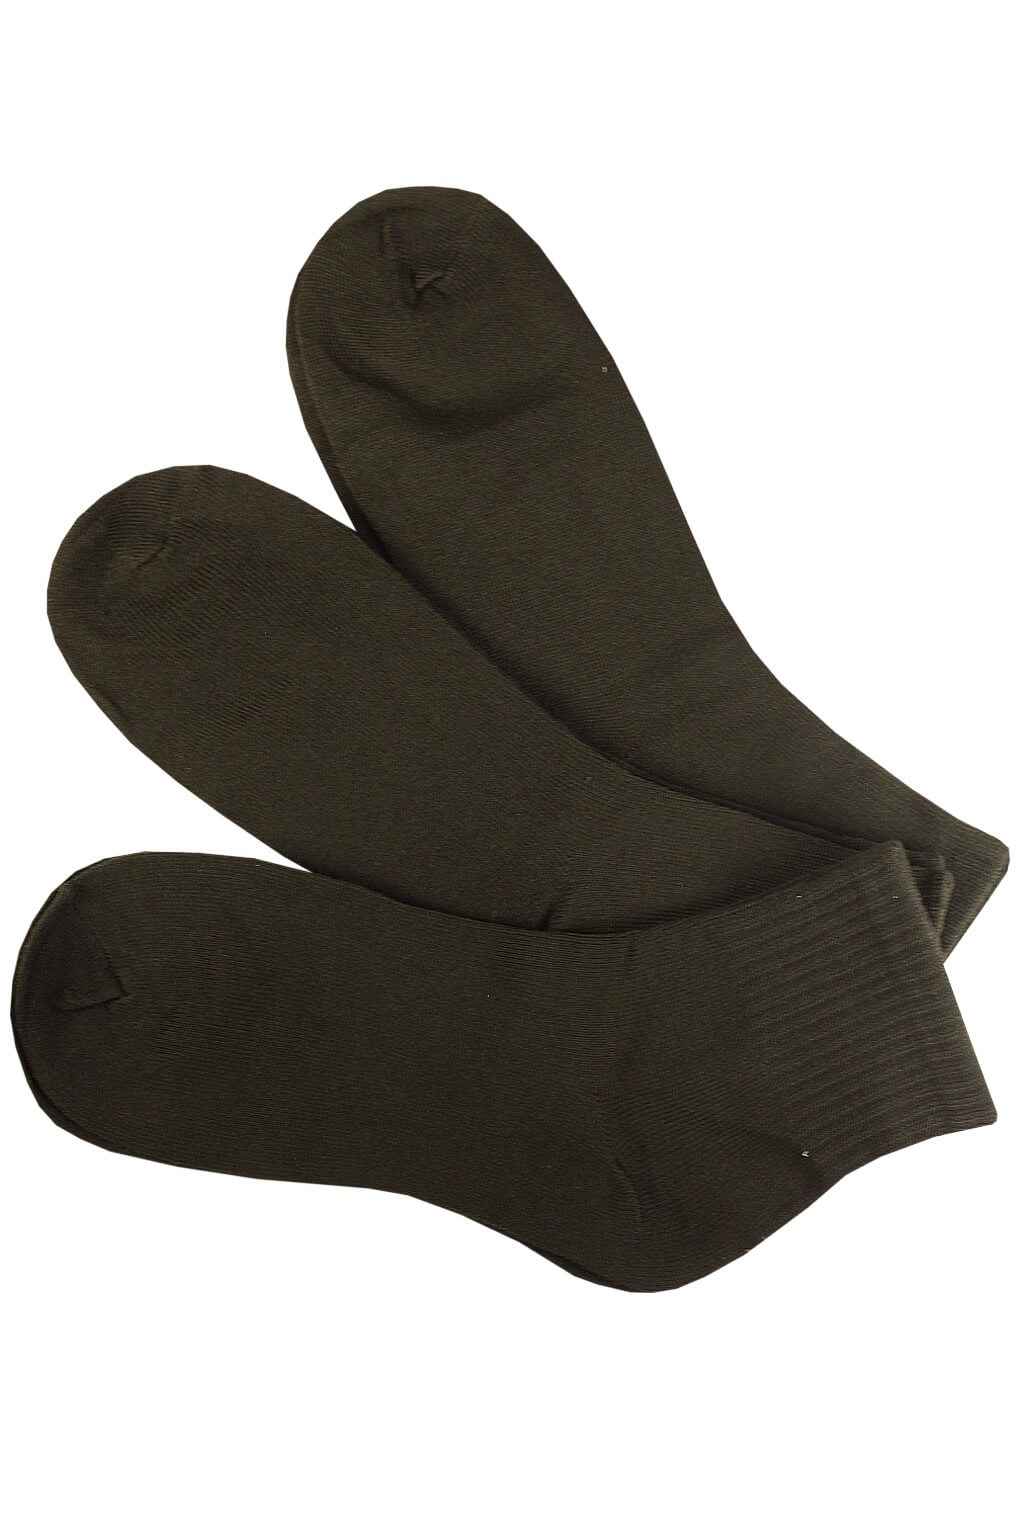 Pánské ponožky bavlněné ZM-301C - 3 páry 44-47 černá